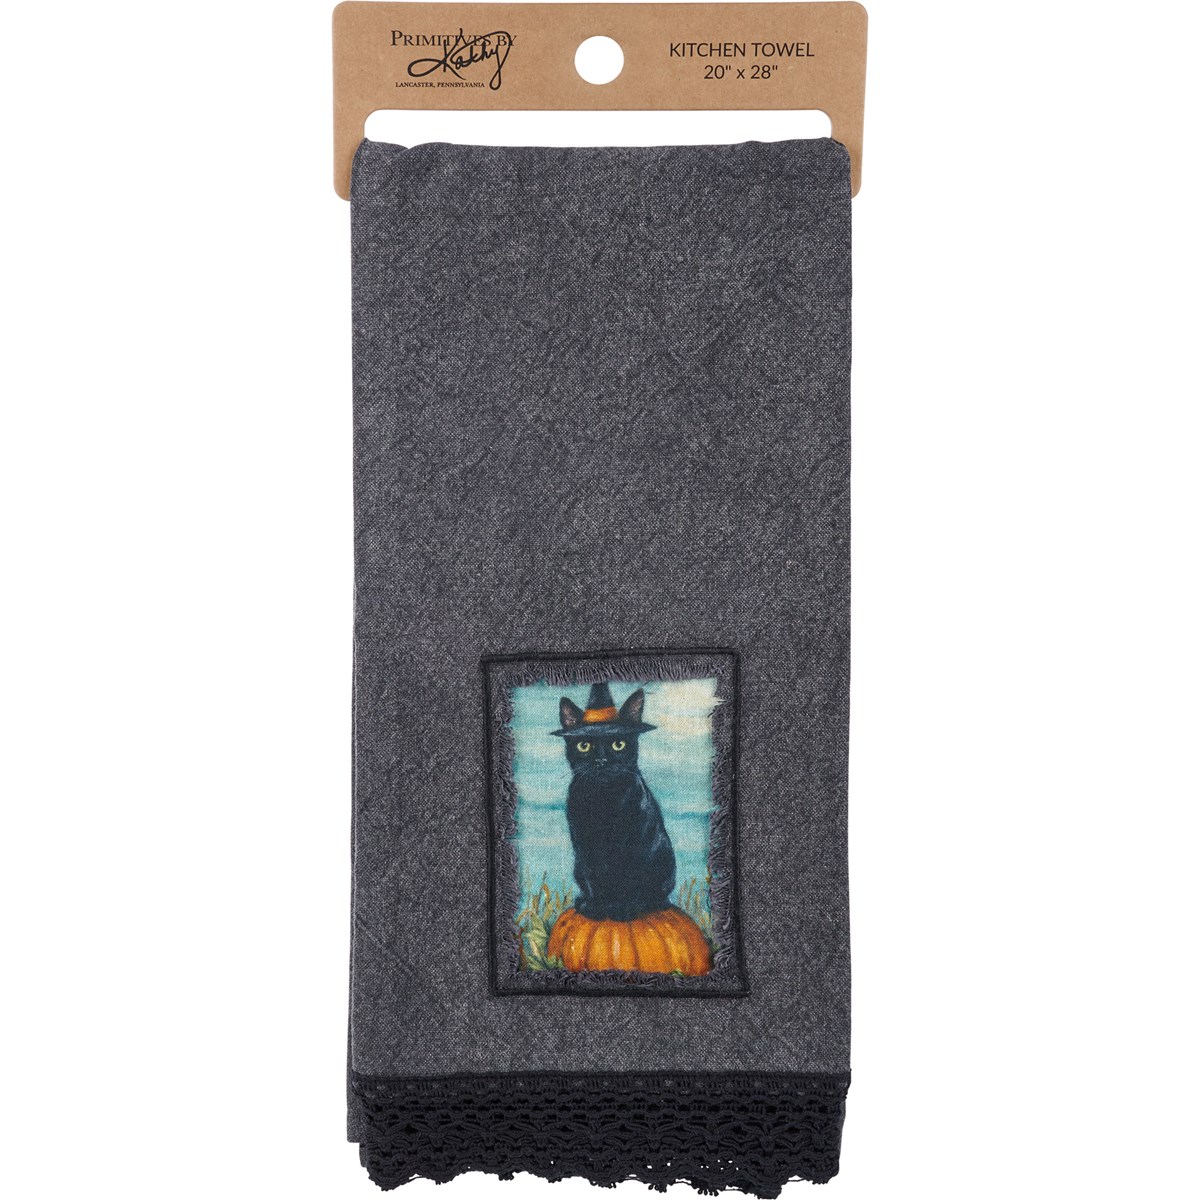 Black Cat Kitchen Towel - Cotton, Lace